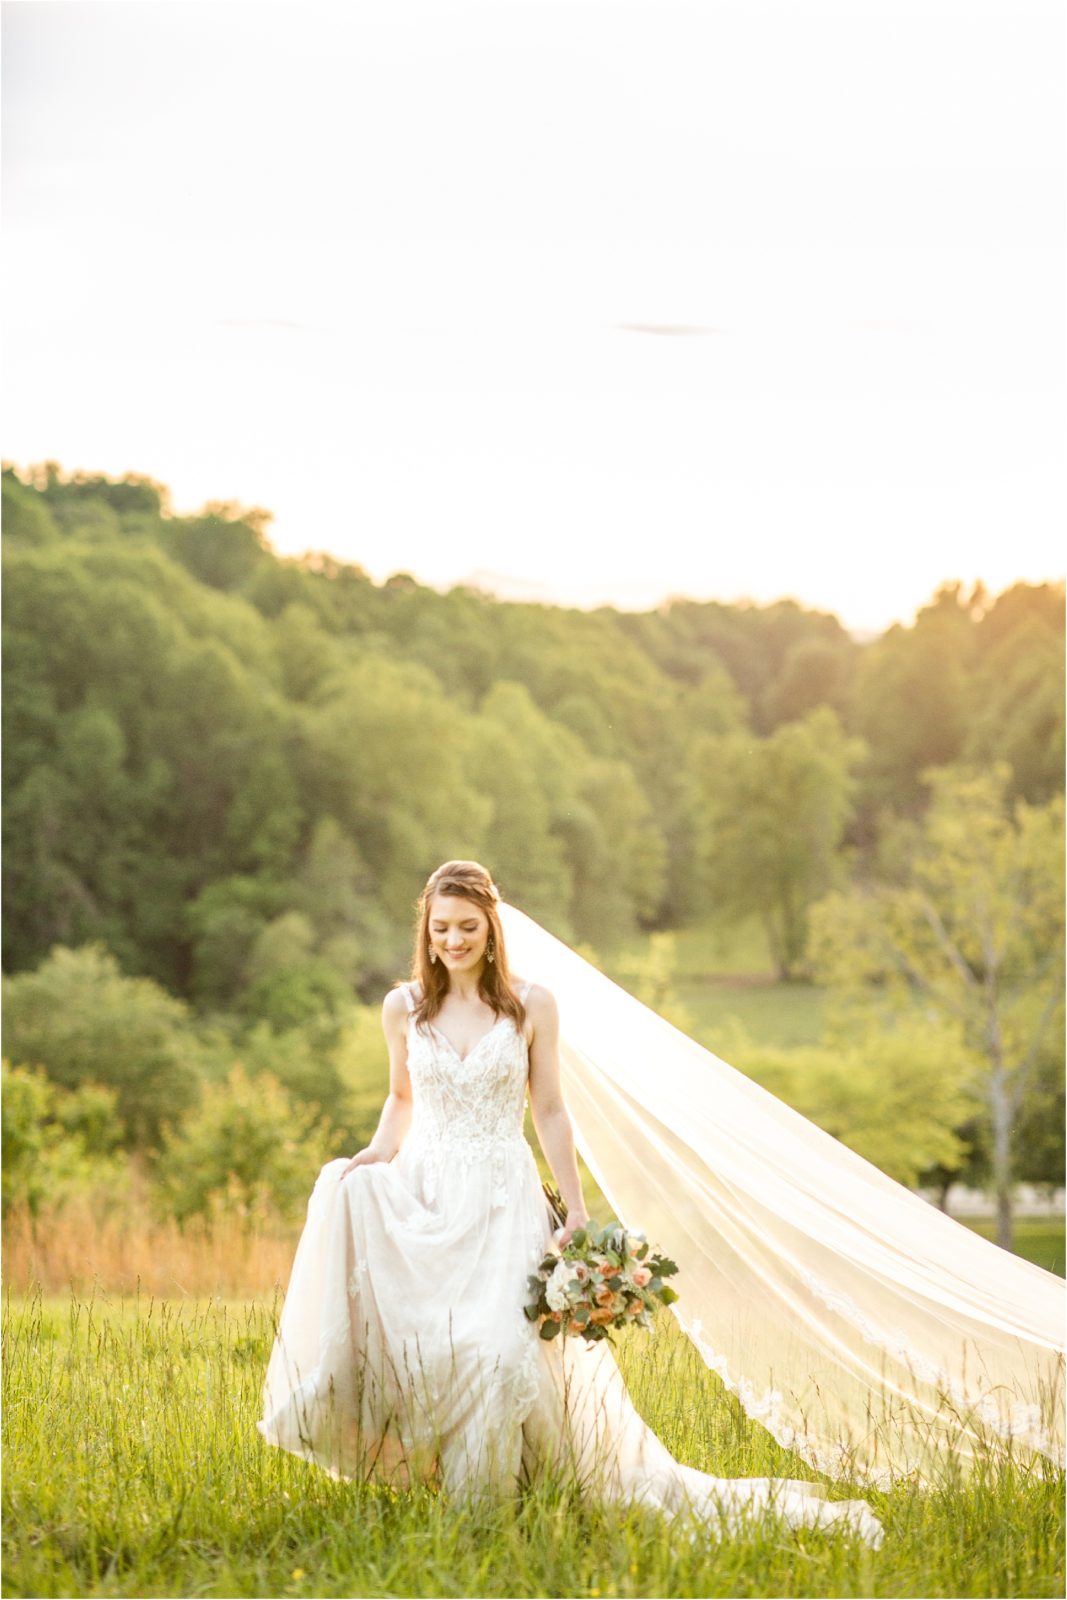 Greenville SC Bride walking in a field